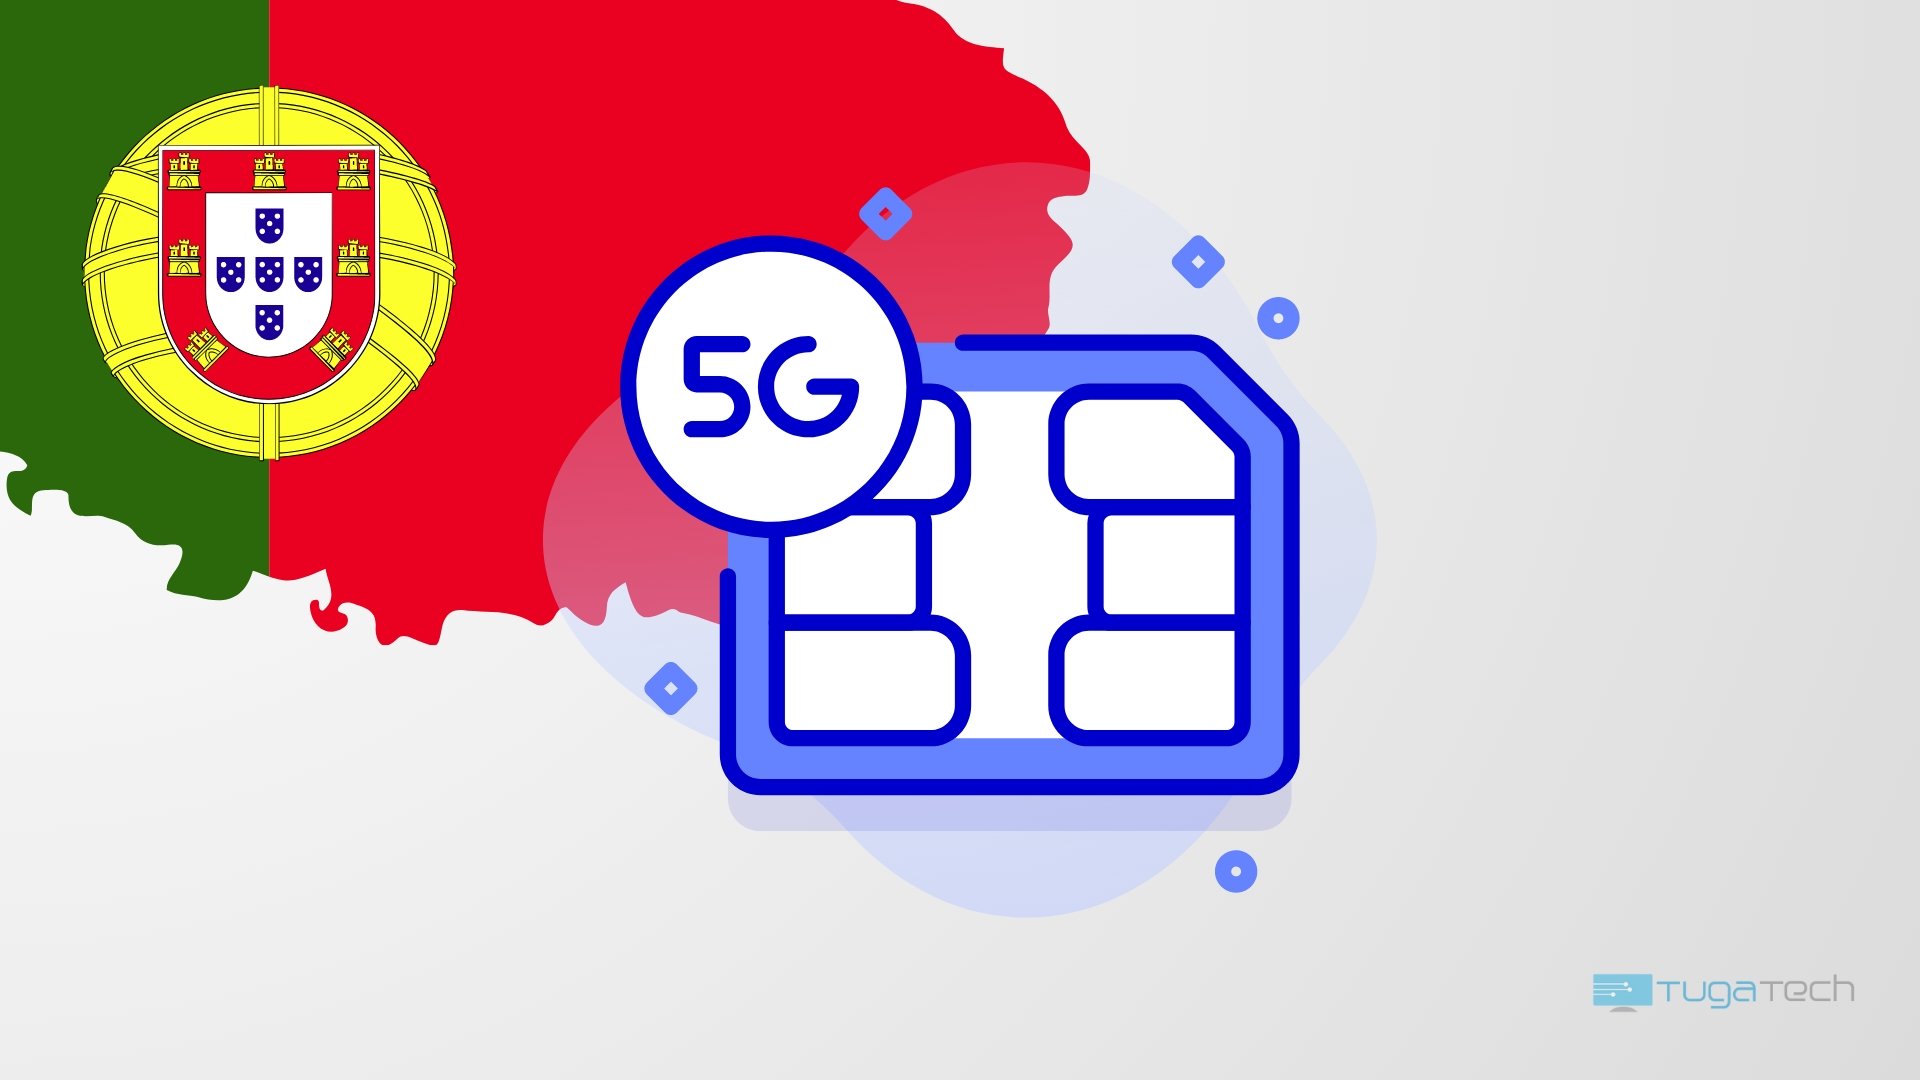 Redes 5G com bandeira de portugal